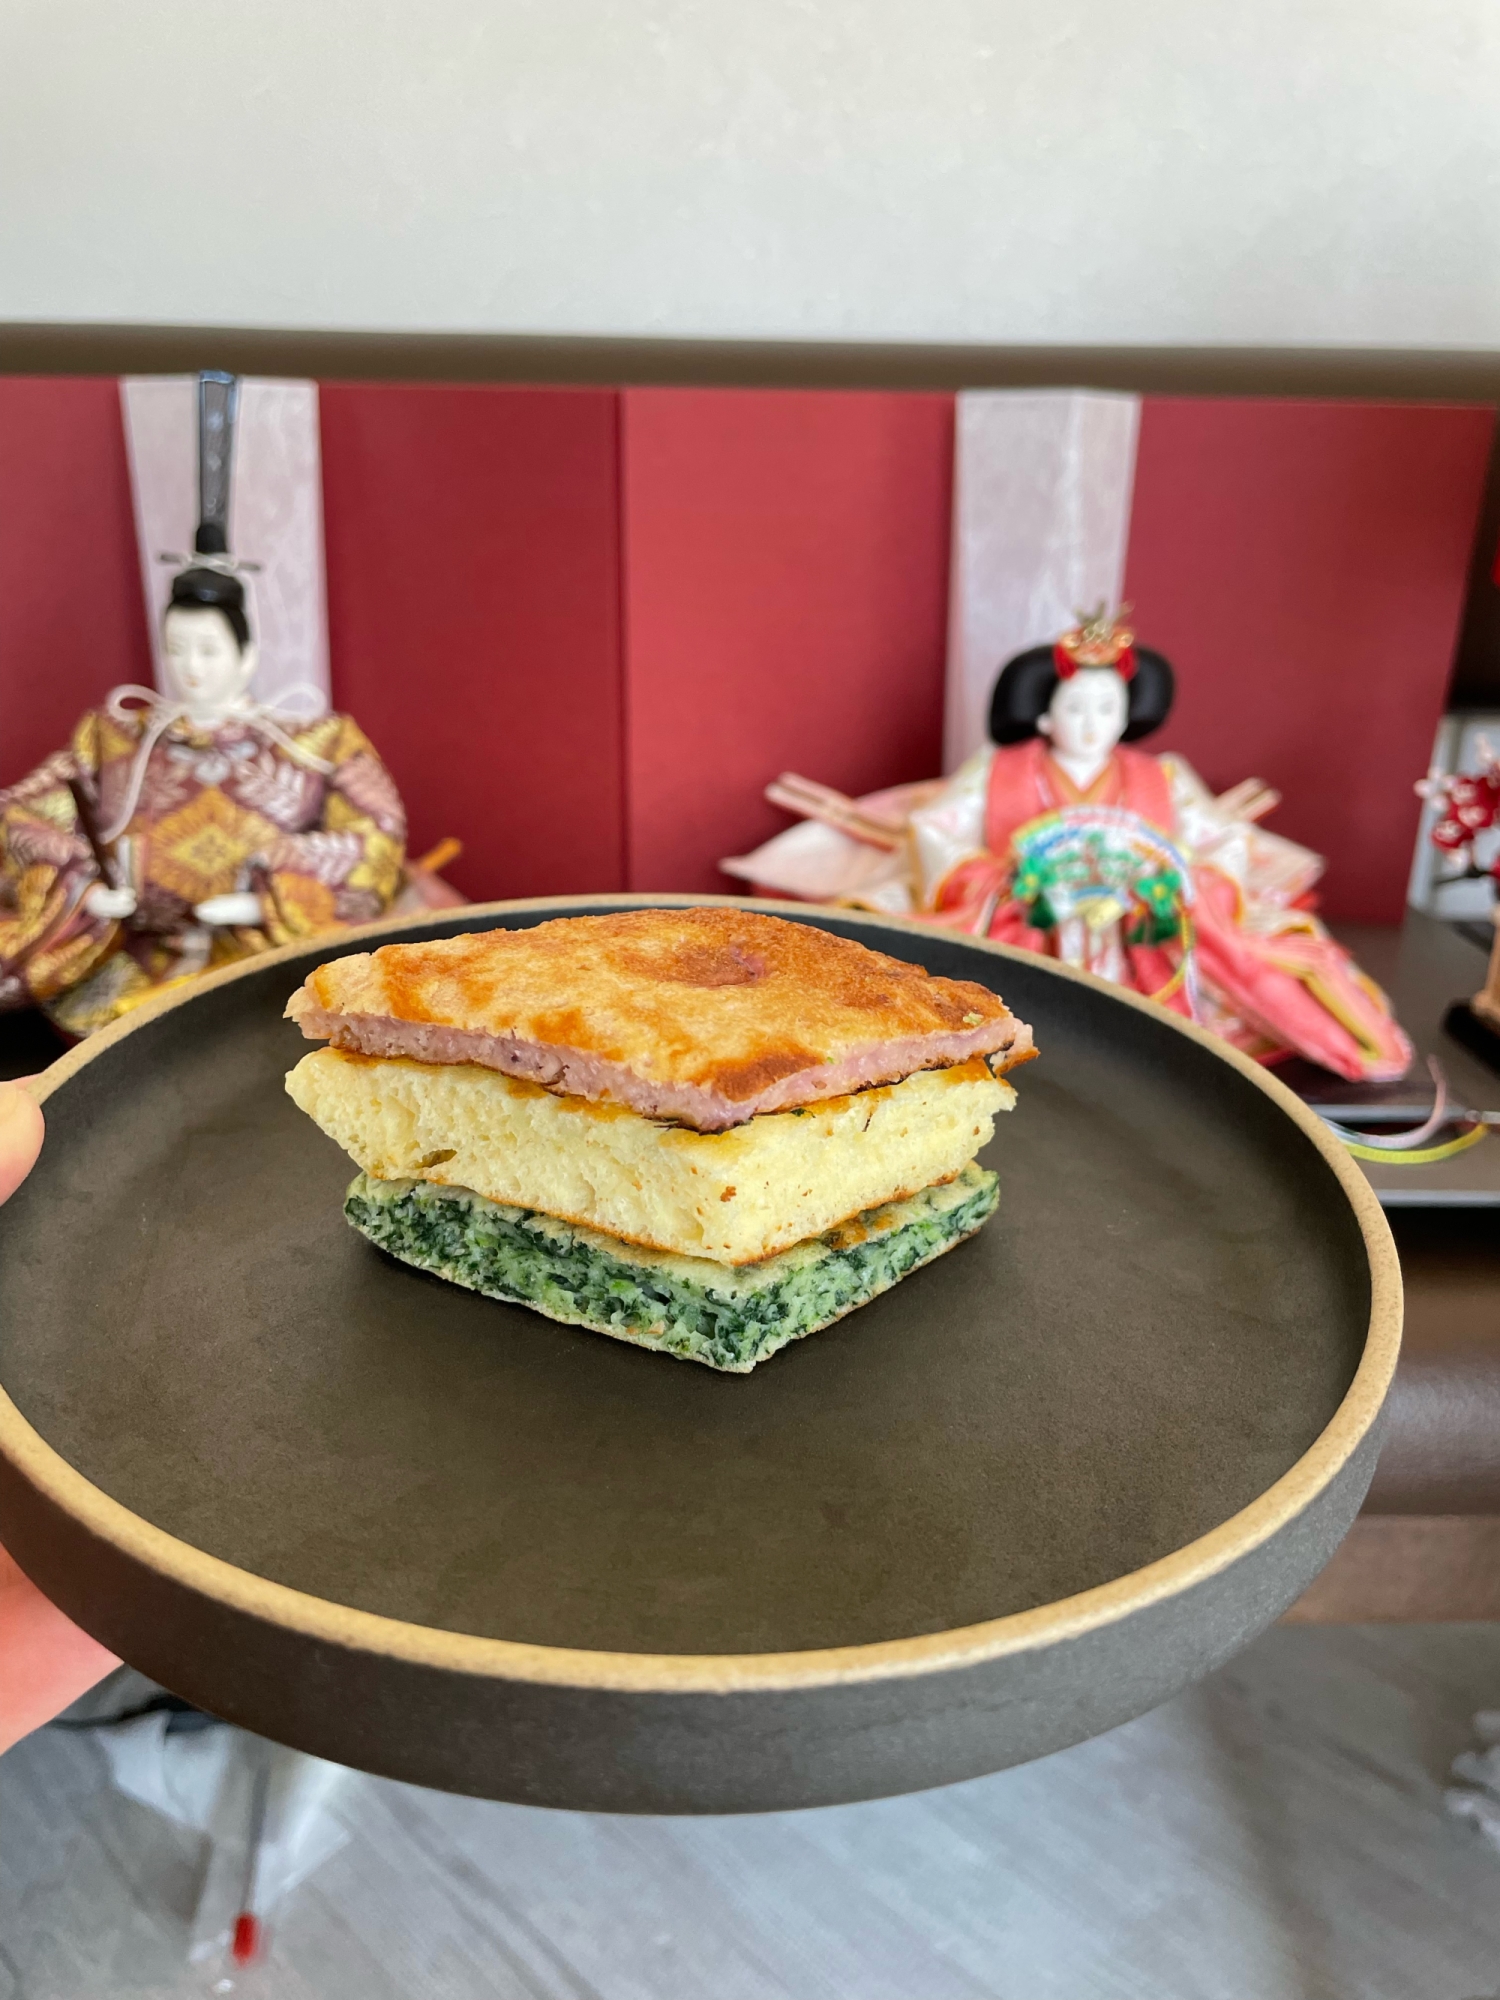 ひな祭りの菱餅風3色パンケーキ